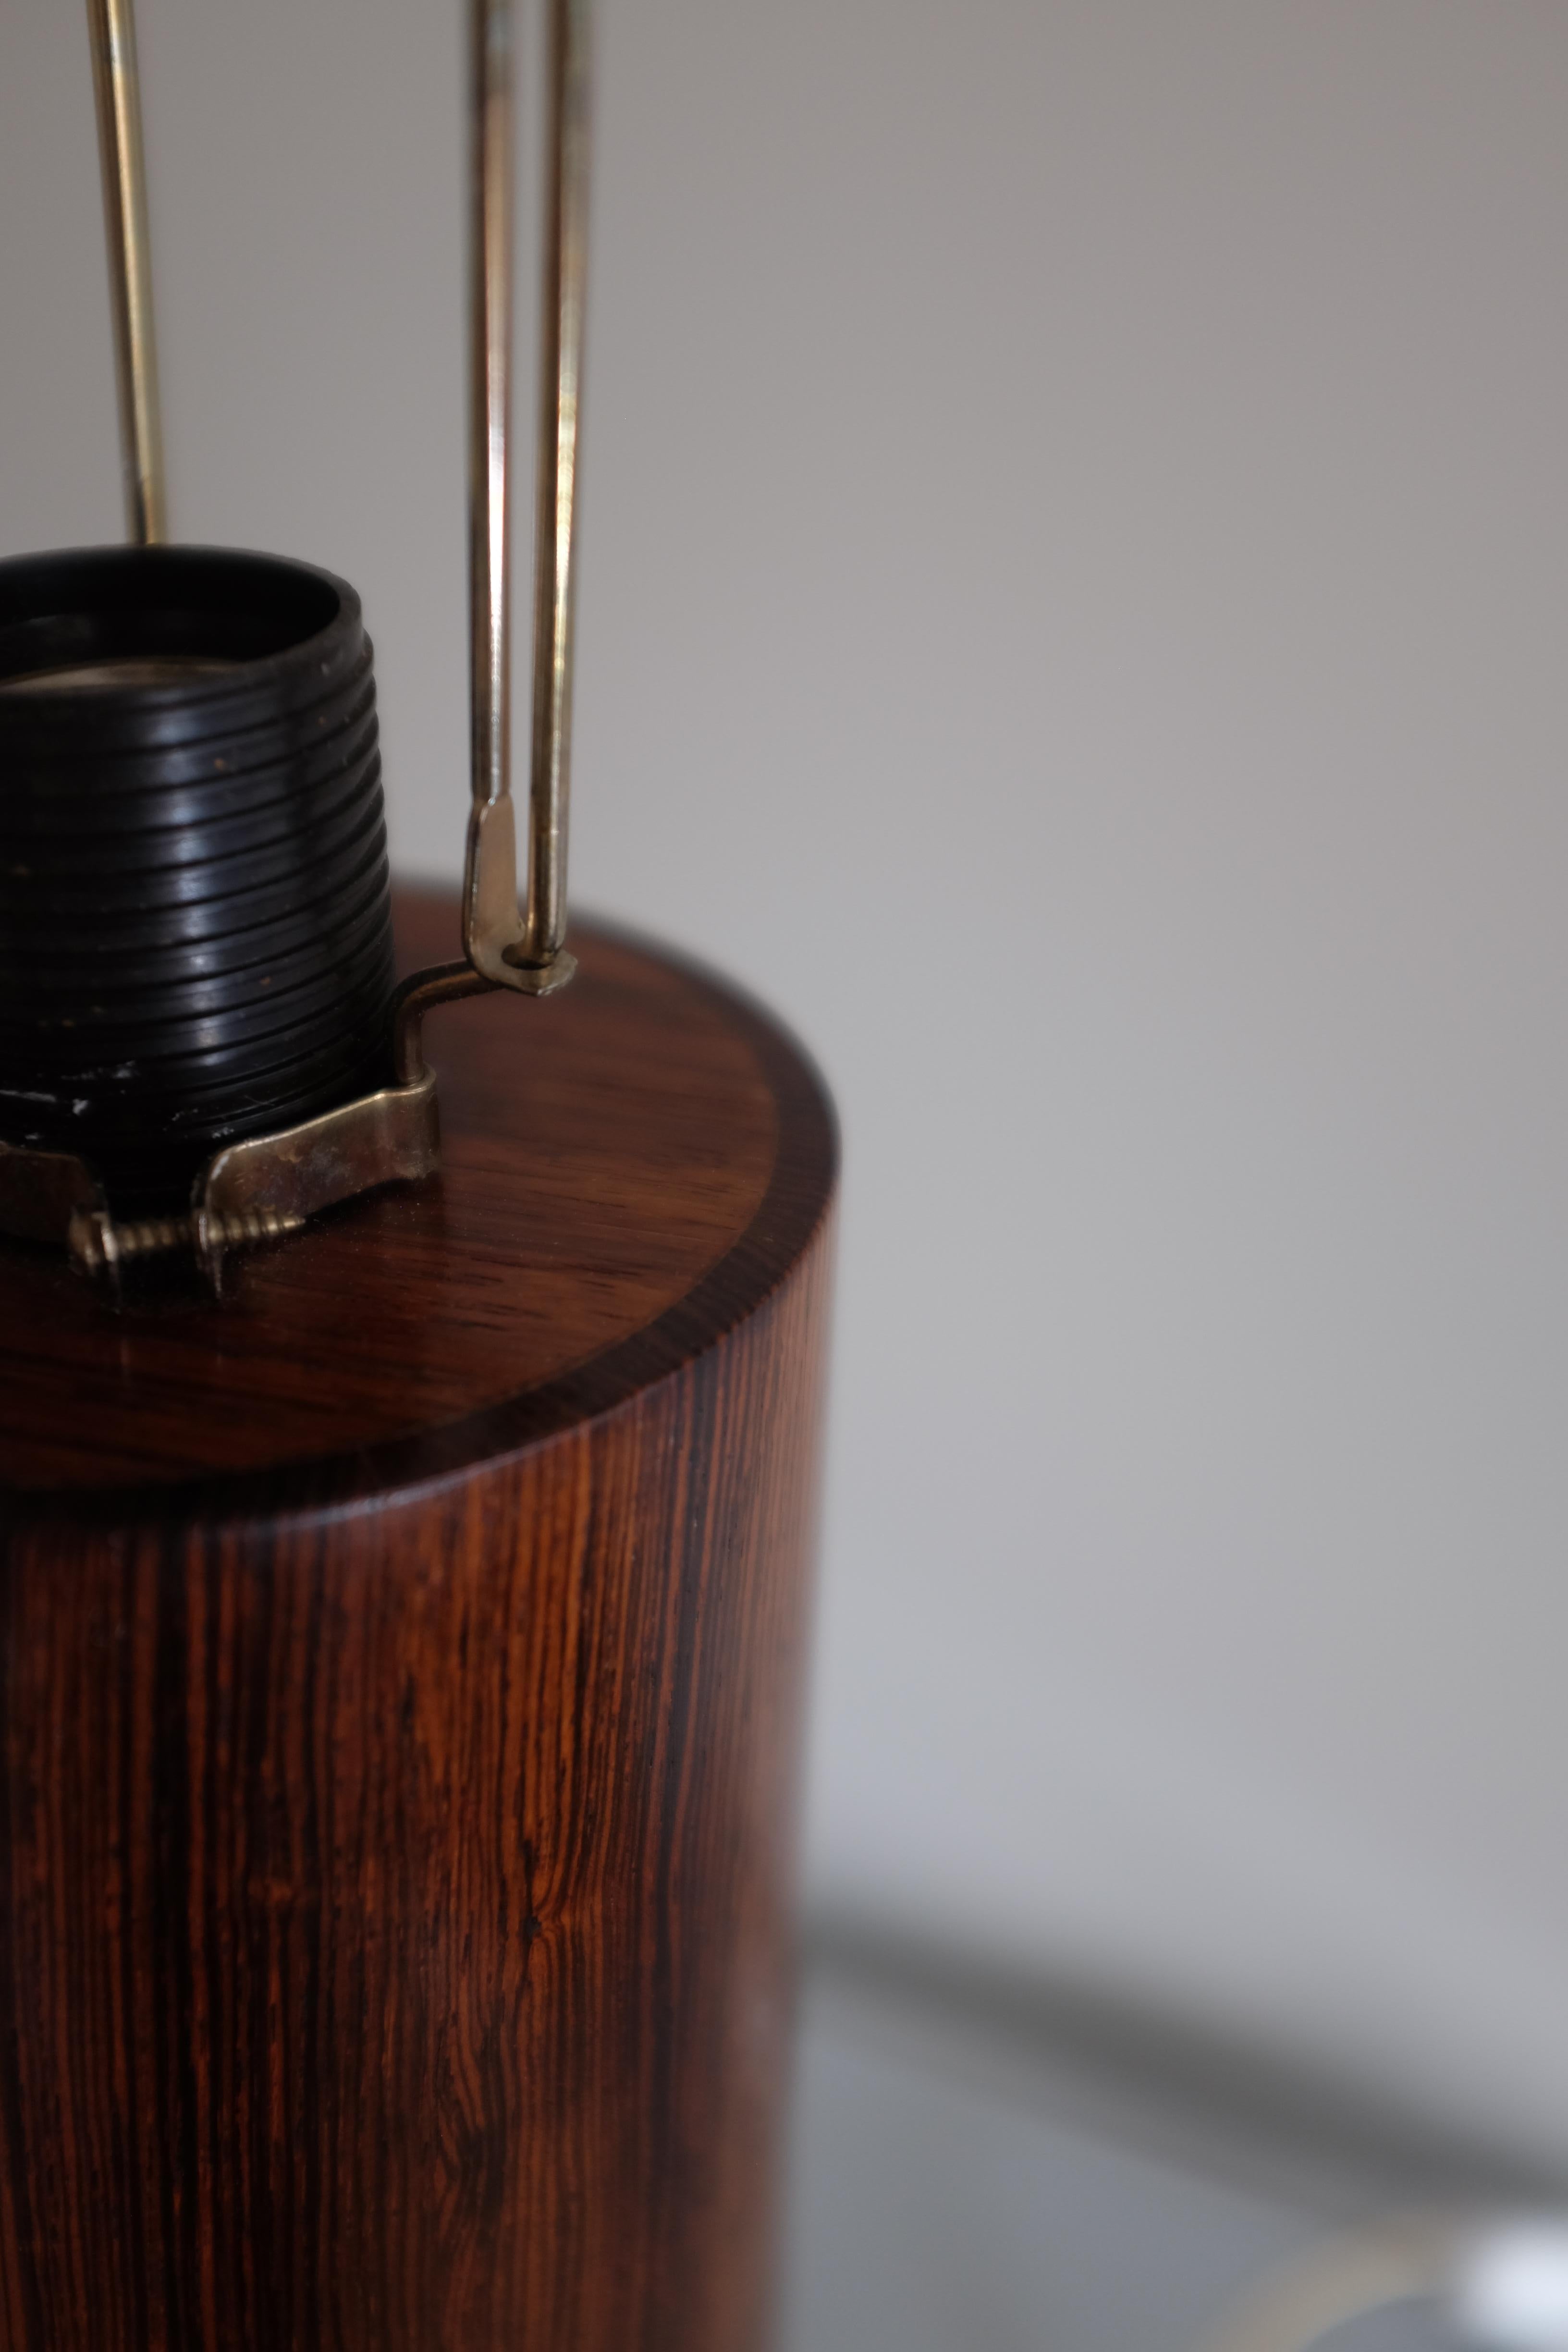 Impressionnante lampe de table en bois de rose conçue par Luxus Vittsjö, Suède. Pied de lampe cylindrique en bois de rose avec étiquette de fabricant visible. En très bon état avec peu de signes d'usure. Vendu sans l'abat-jour.

Dimensions : H 22.7